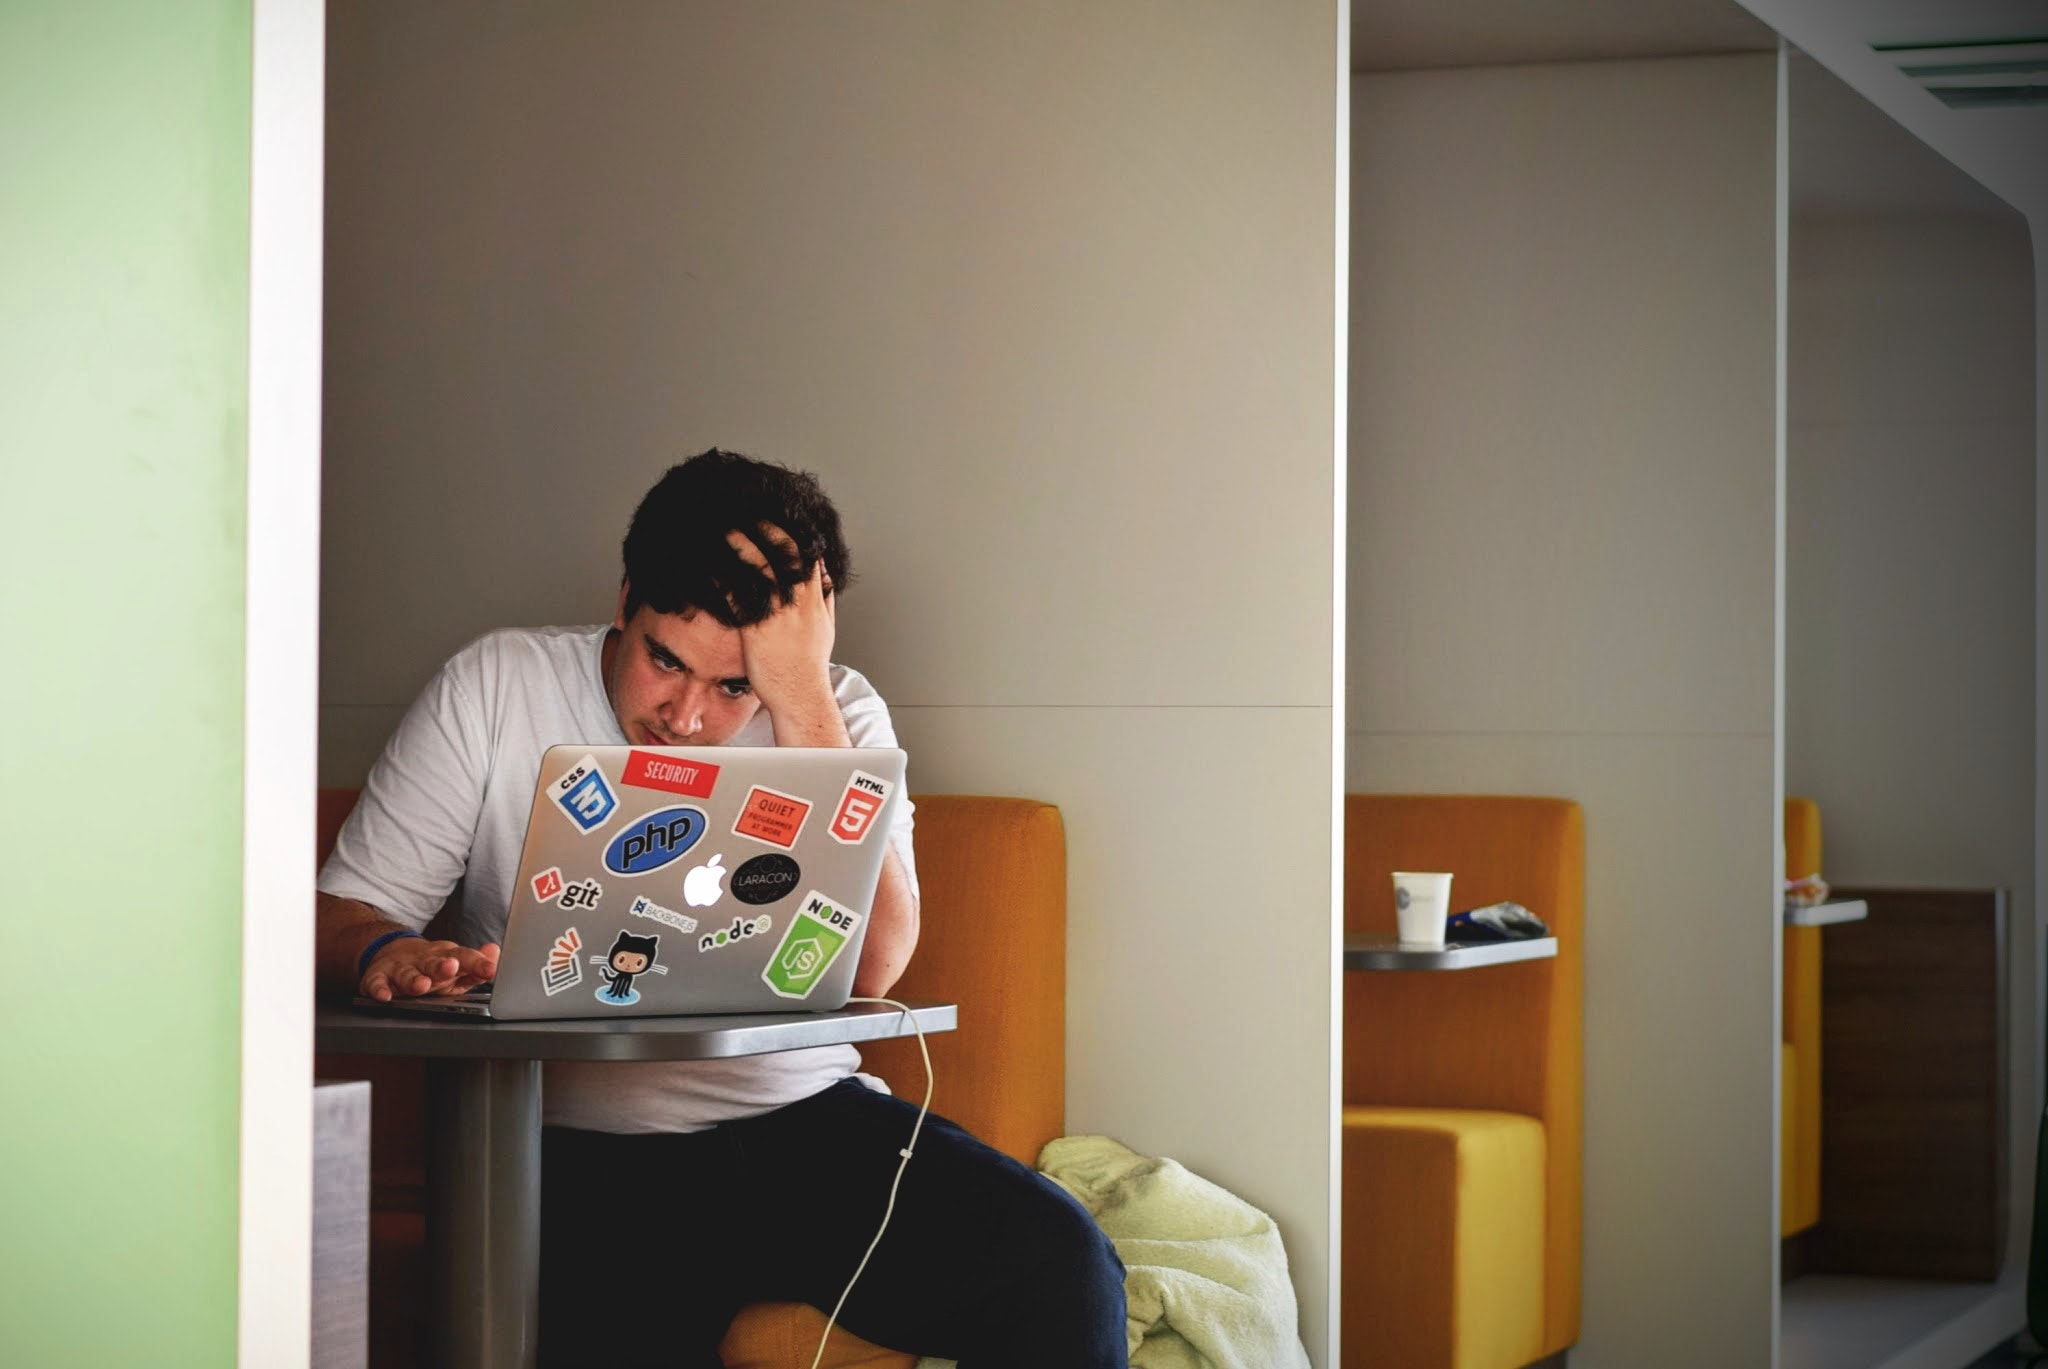 Jongeman studeert met laptop in studieruimte, zit met hand in zijn haar